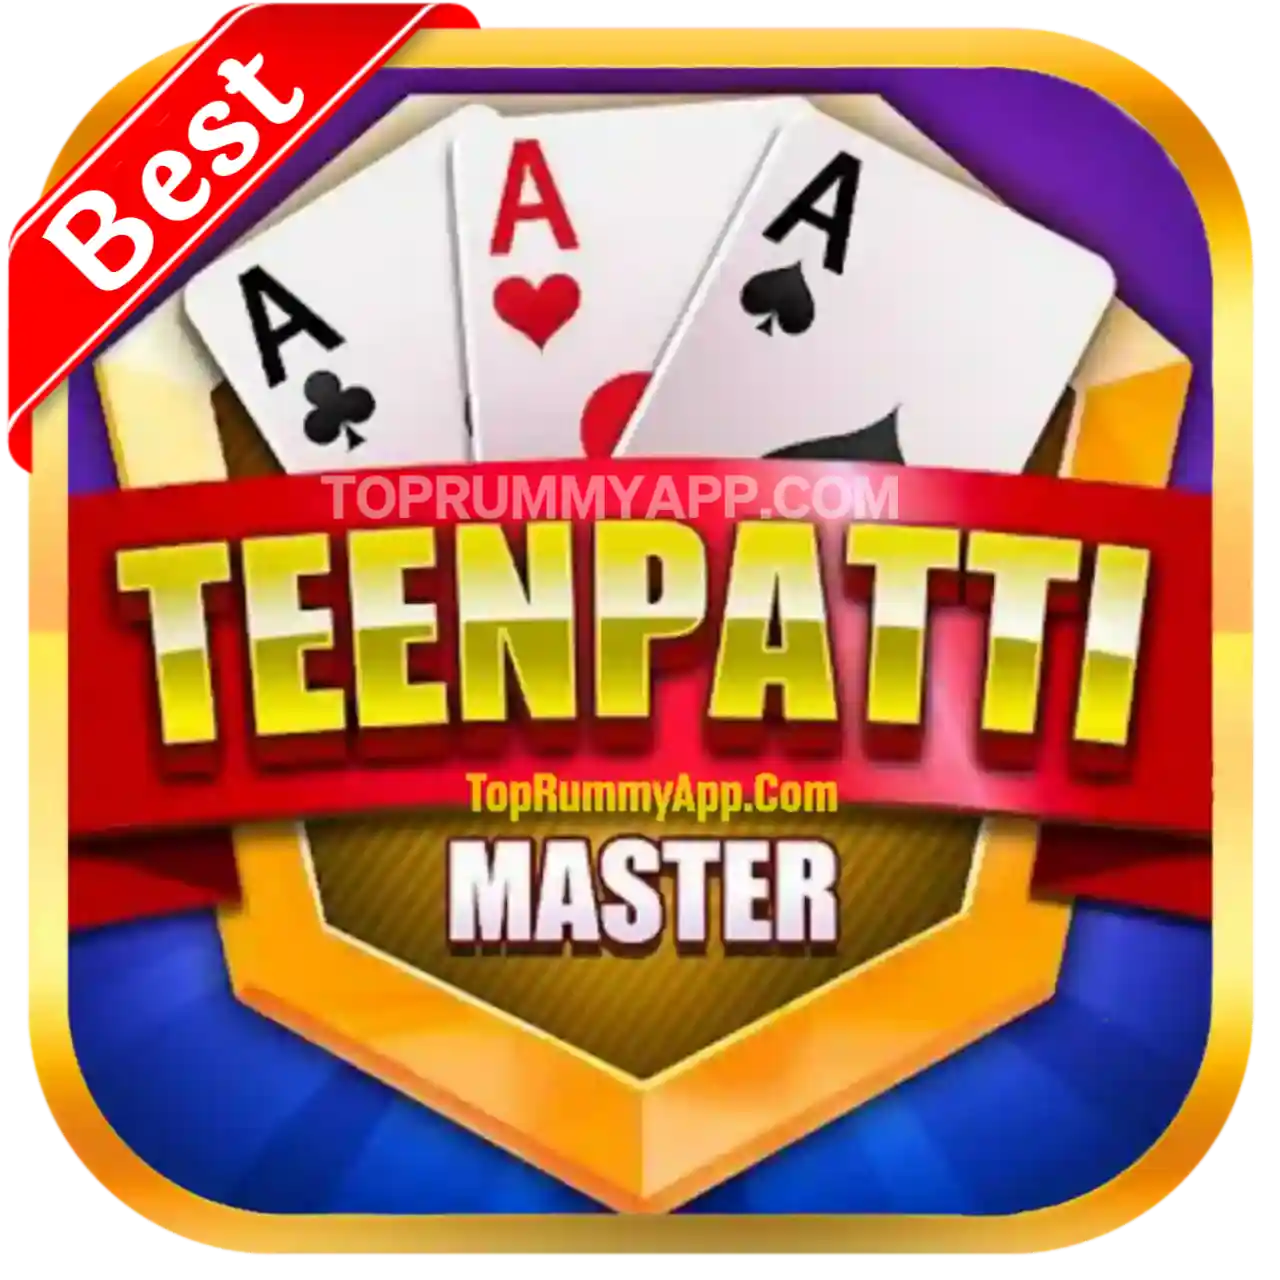 Teen Patti Master Apk Download - Teen Patti Winner Apk Download